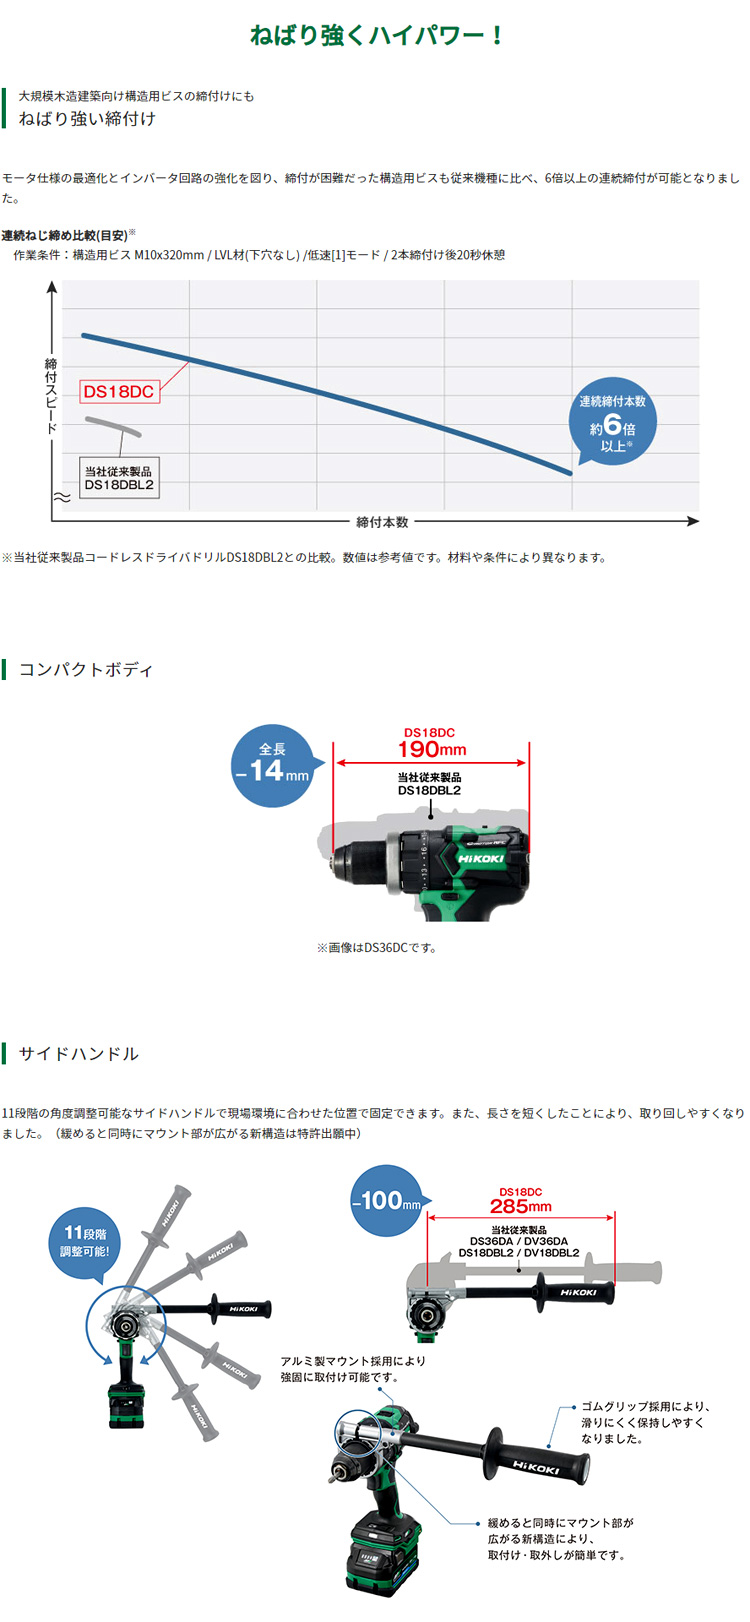 18V【5.0Ah電池付】コードレスドライバドリル